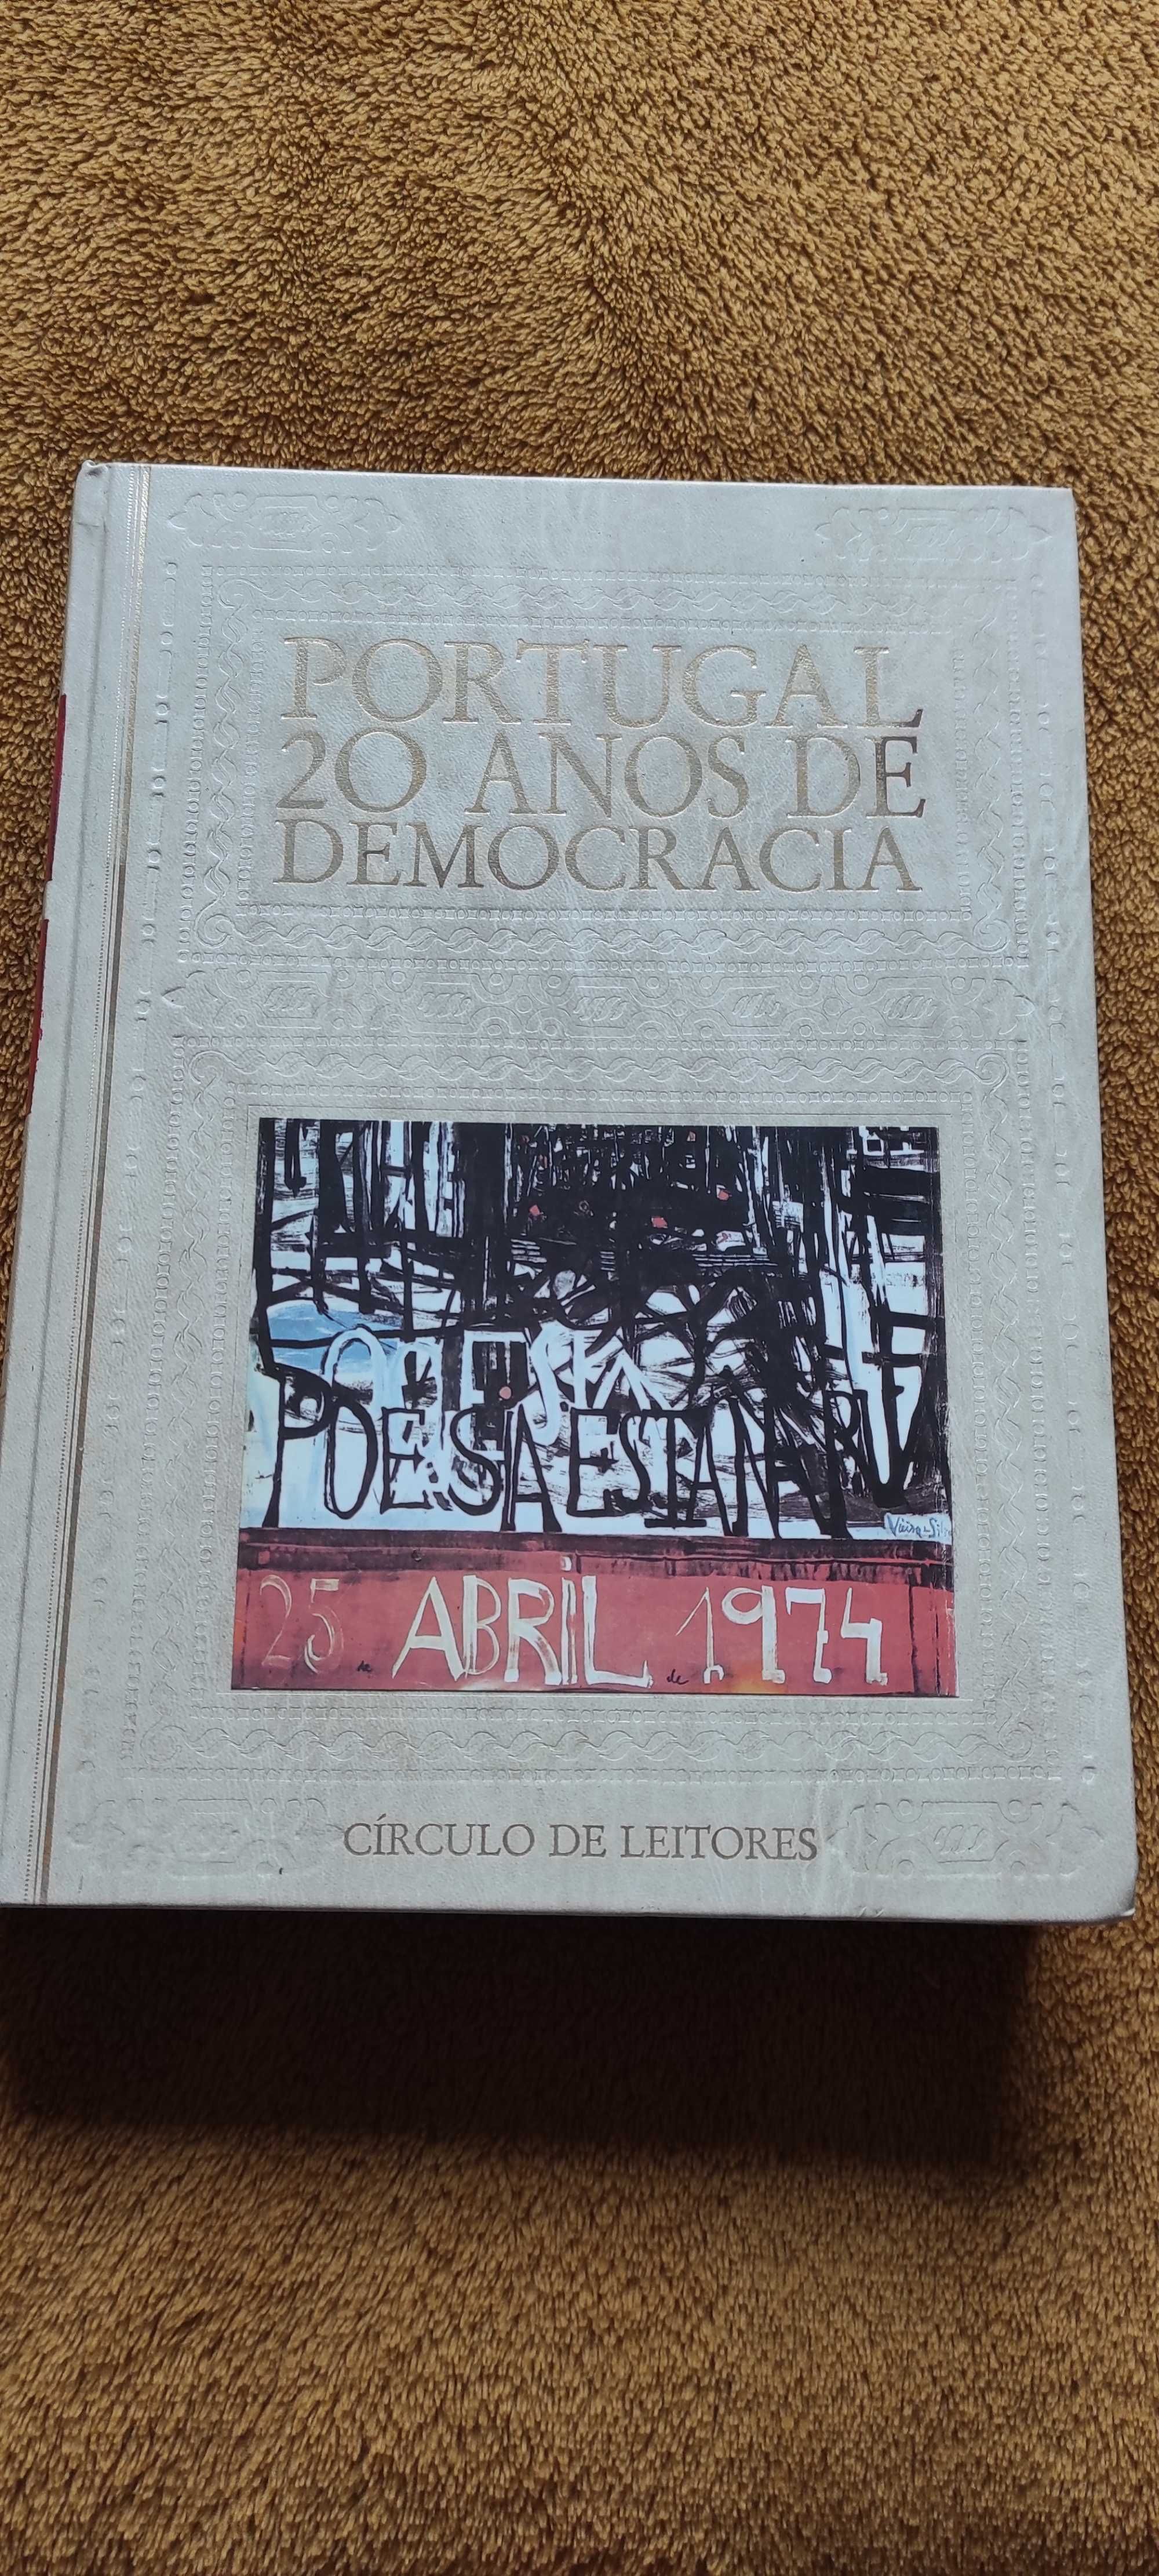 PORTUGAL 20 ANOS DE DEMOCRACIA.— Coordenação de António Reis.